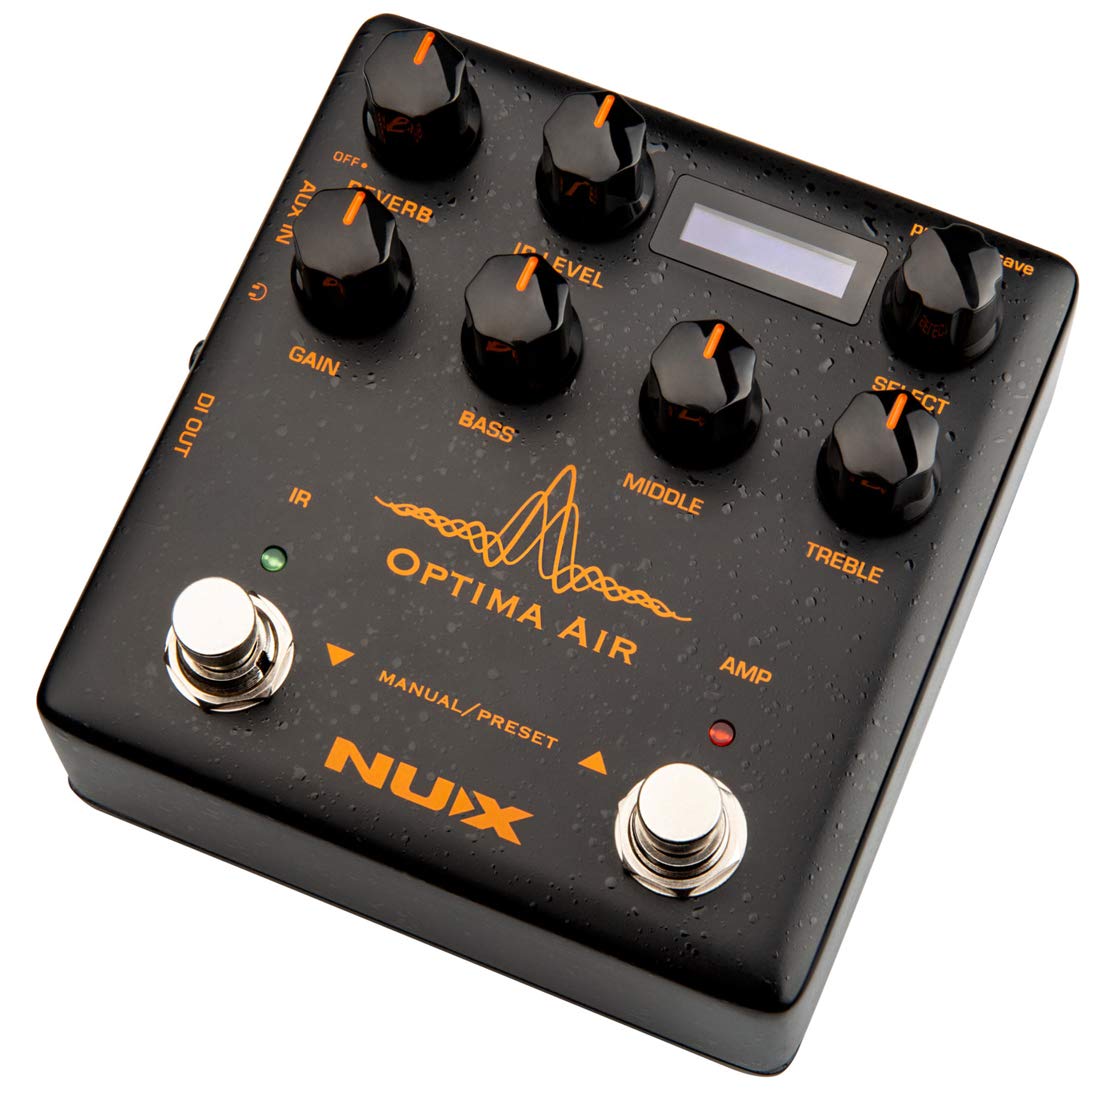 NUX Optima Air 双开关原声吉他模拟器，带前置放大器、红外加载器、捕获模式...